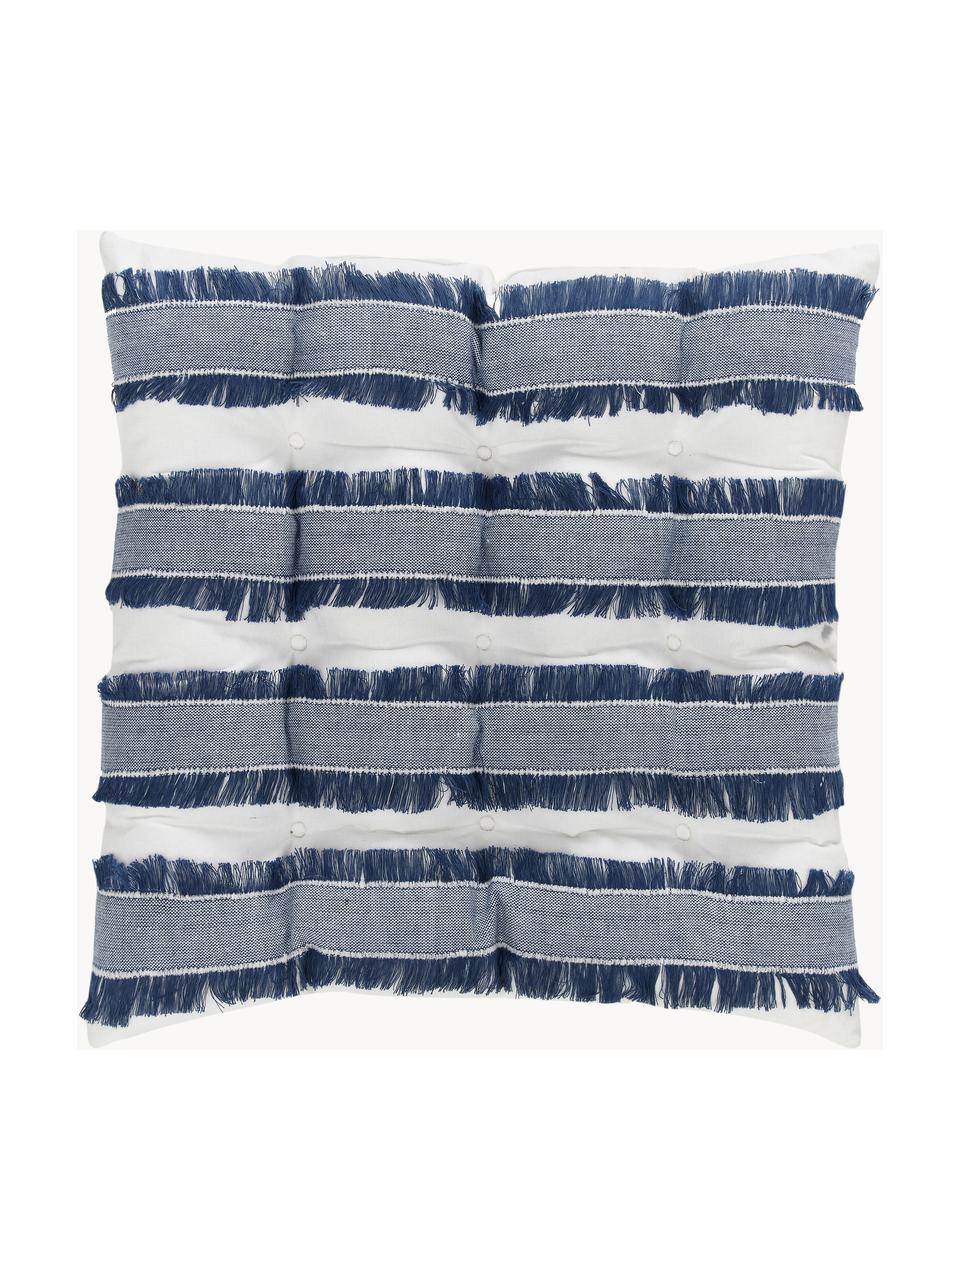 Cuscino sedia in cotone con frange Raja, Rivestimento: 100% cotone, Blu scuro, bianco crema, Larg. 40 x Lung. 40 cm